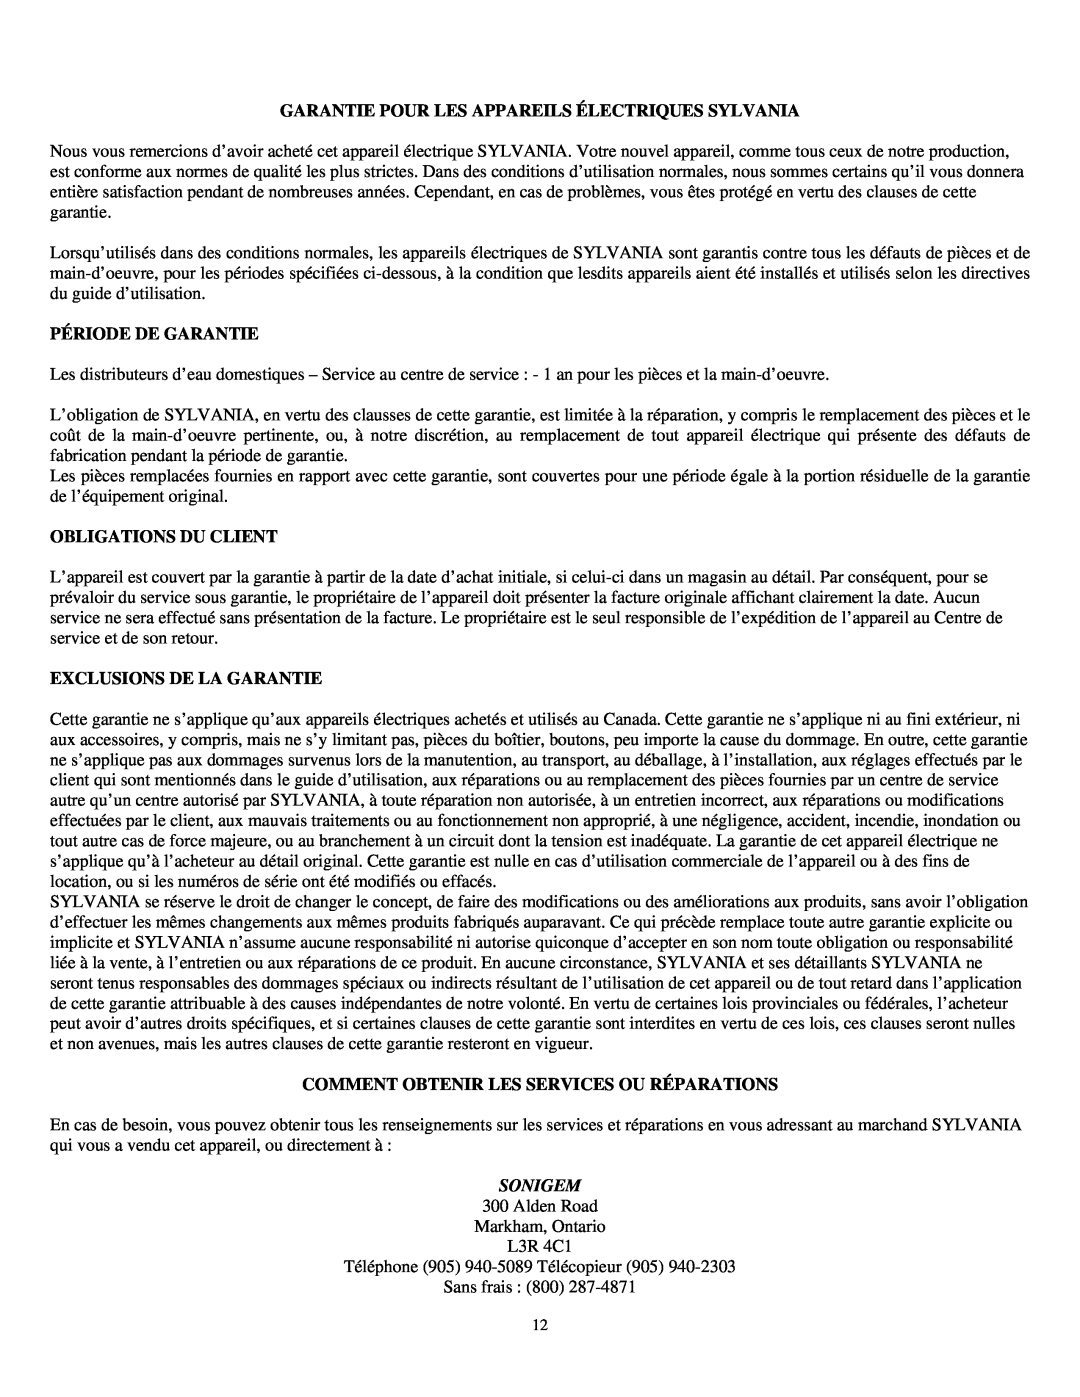 Sylvania SE80092 Garantie Pour Les Appareils Électriques Sylvania, Période De Garantie, Obligations Du Client, Sonigem 